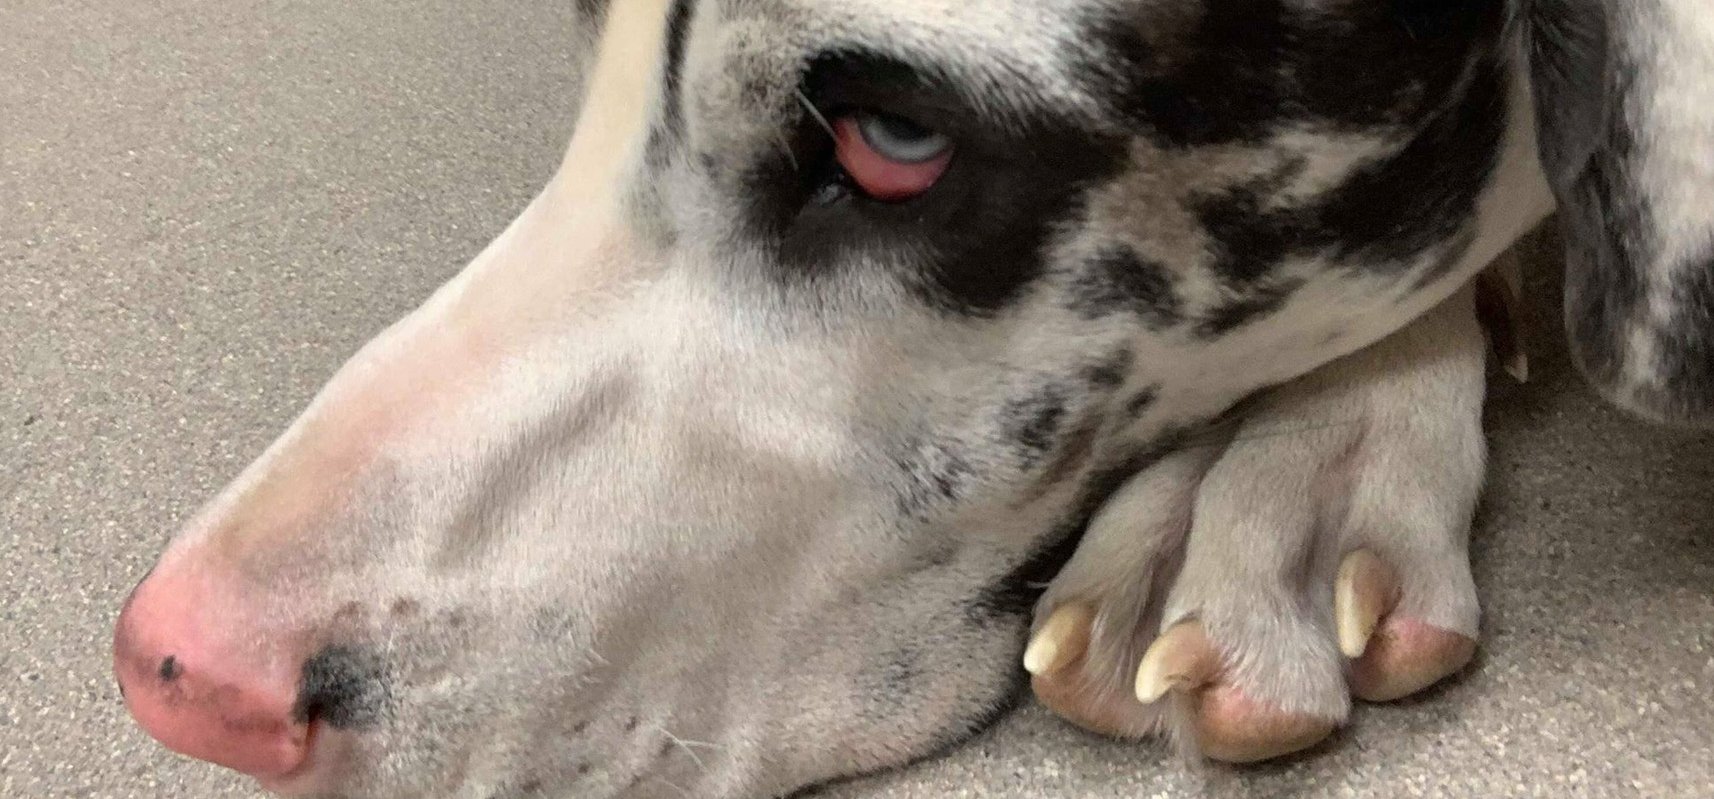 Íme a kutya, aki egy horror filmben is szerepet kaphatna a 70 fogával – fotók